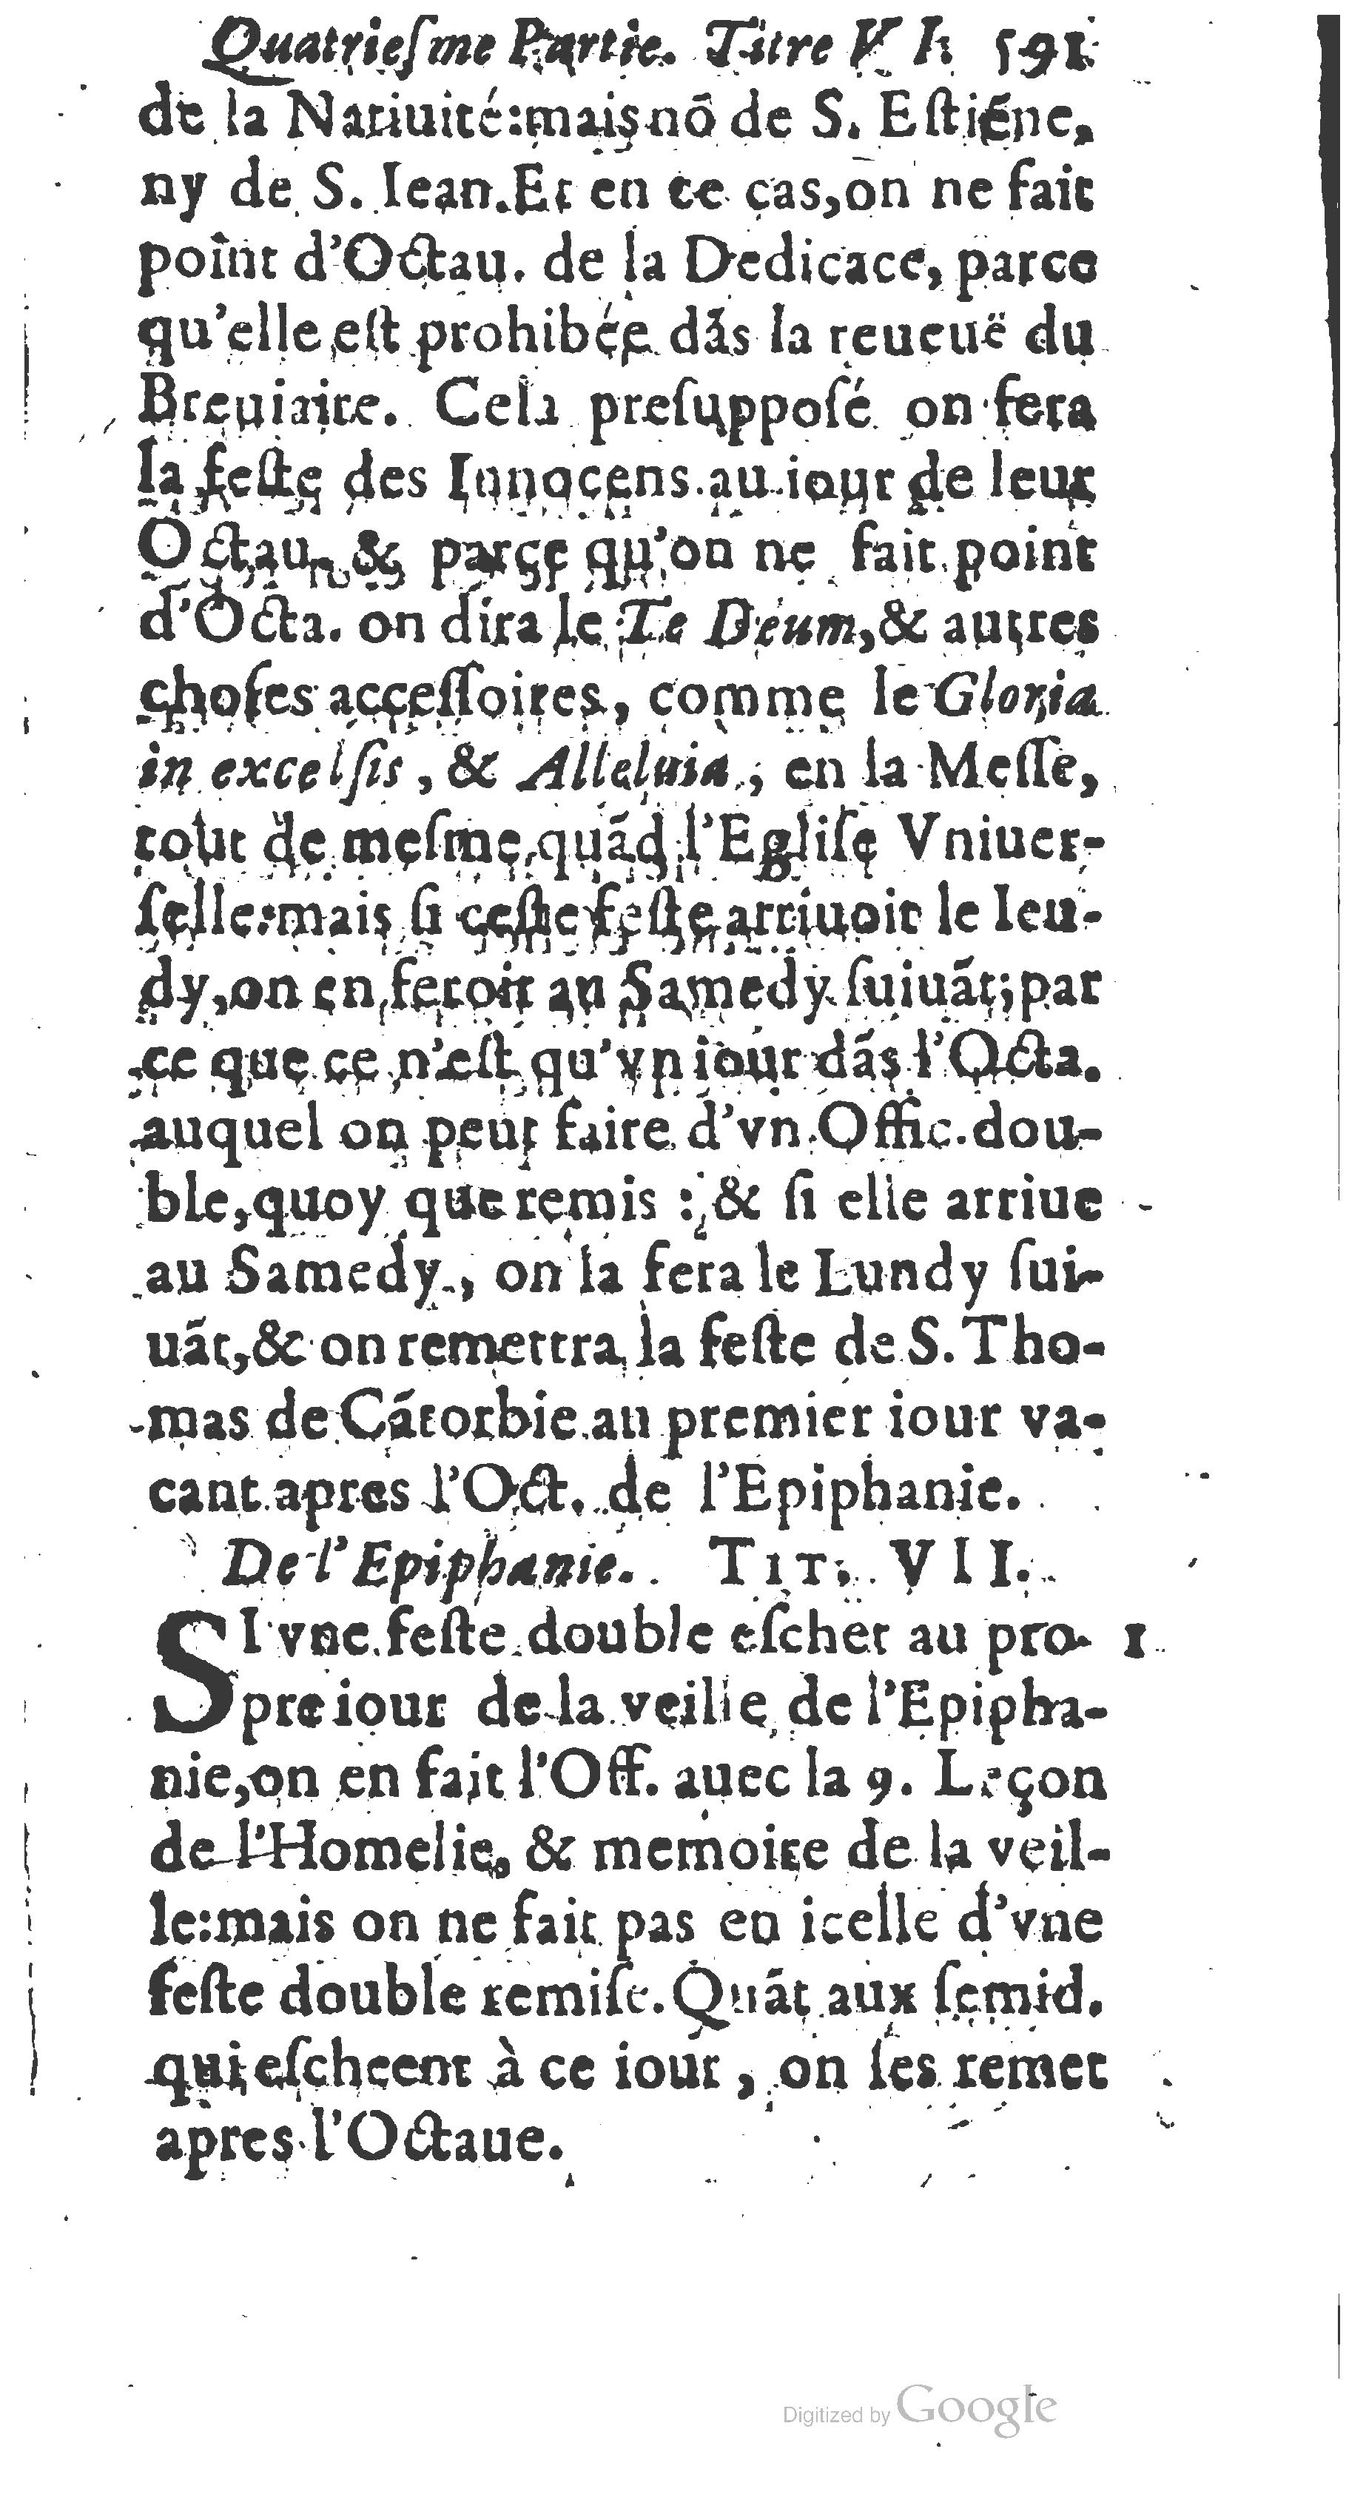 1651 Abrégé du trésor des cérémonies ecclésiastiques Guillermet_BM Lyon_Page_610.jpg